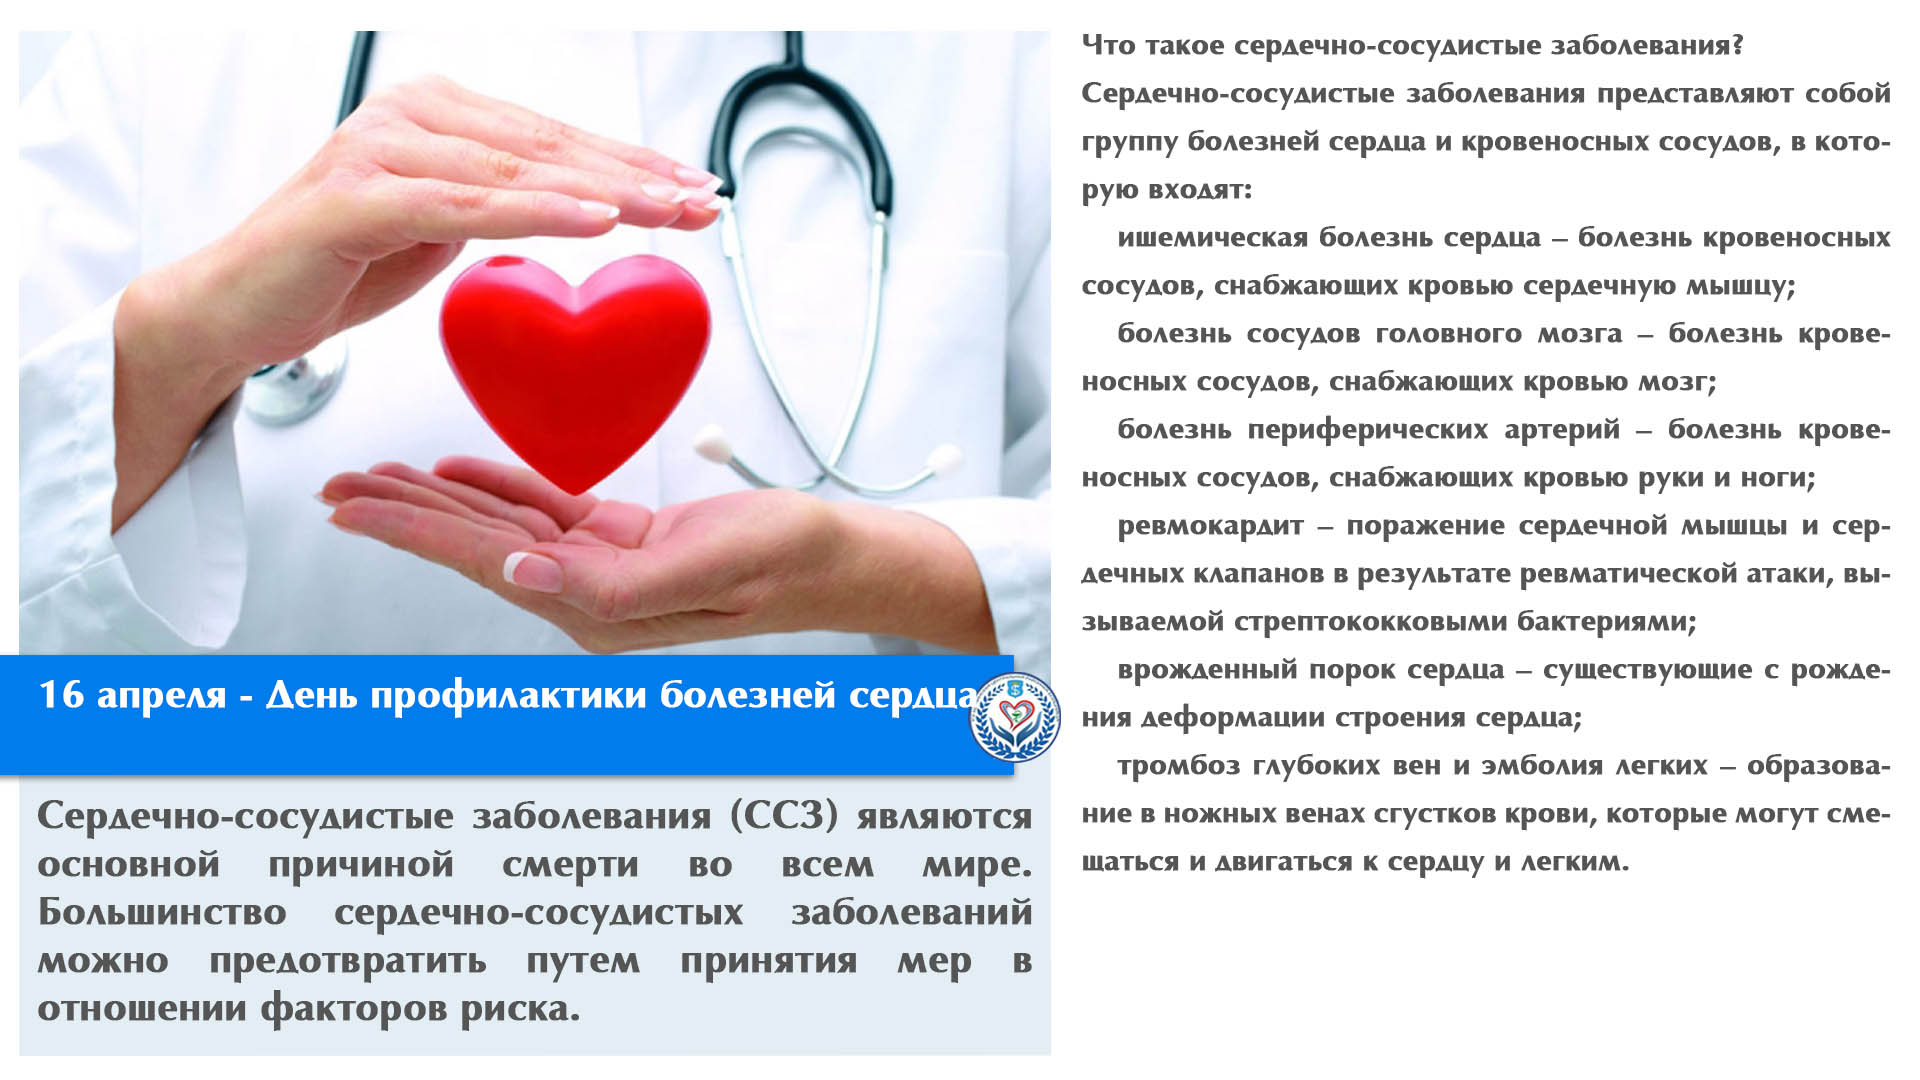 16 апреля - День профилактики болезней сердца